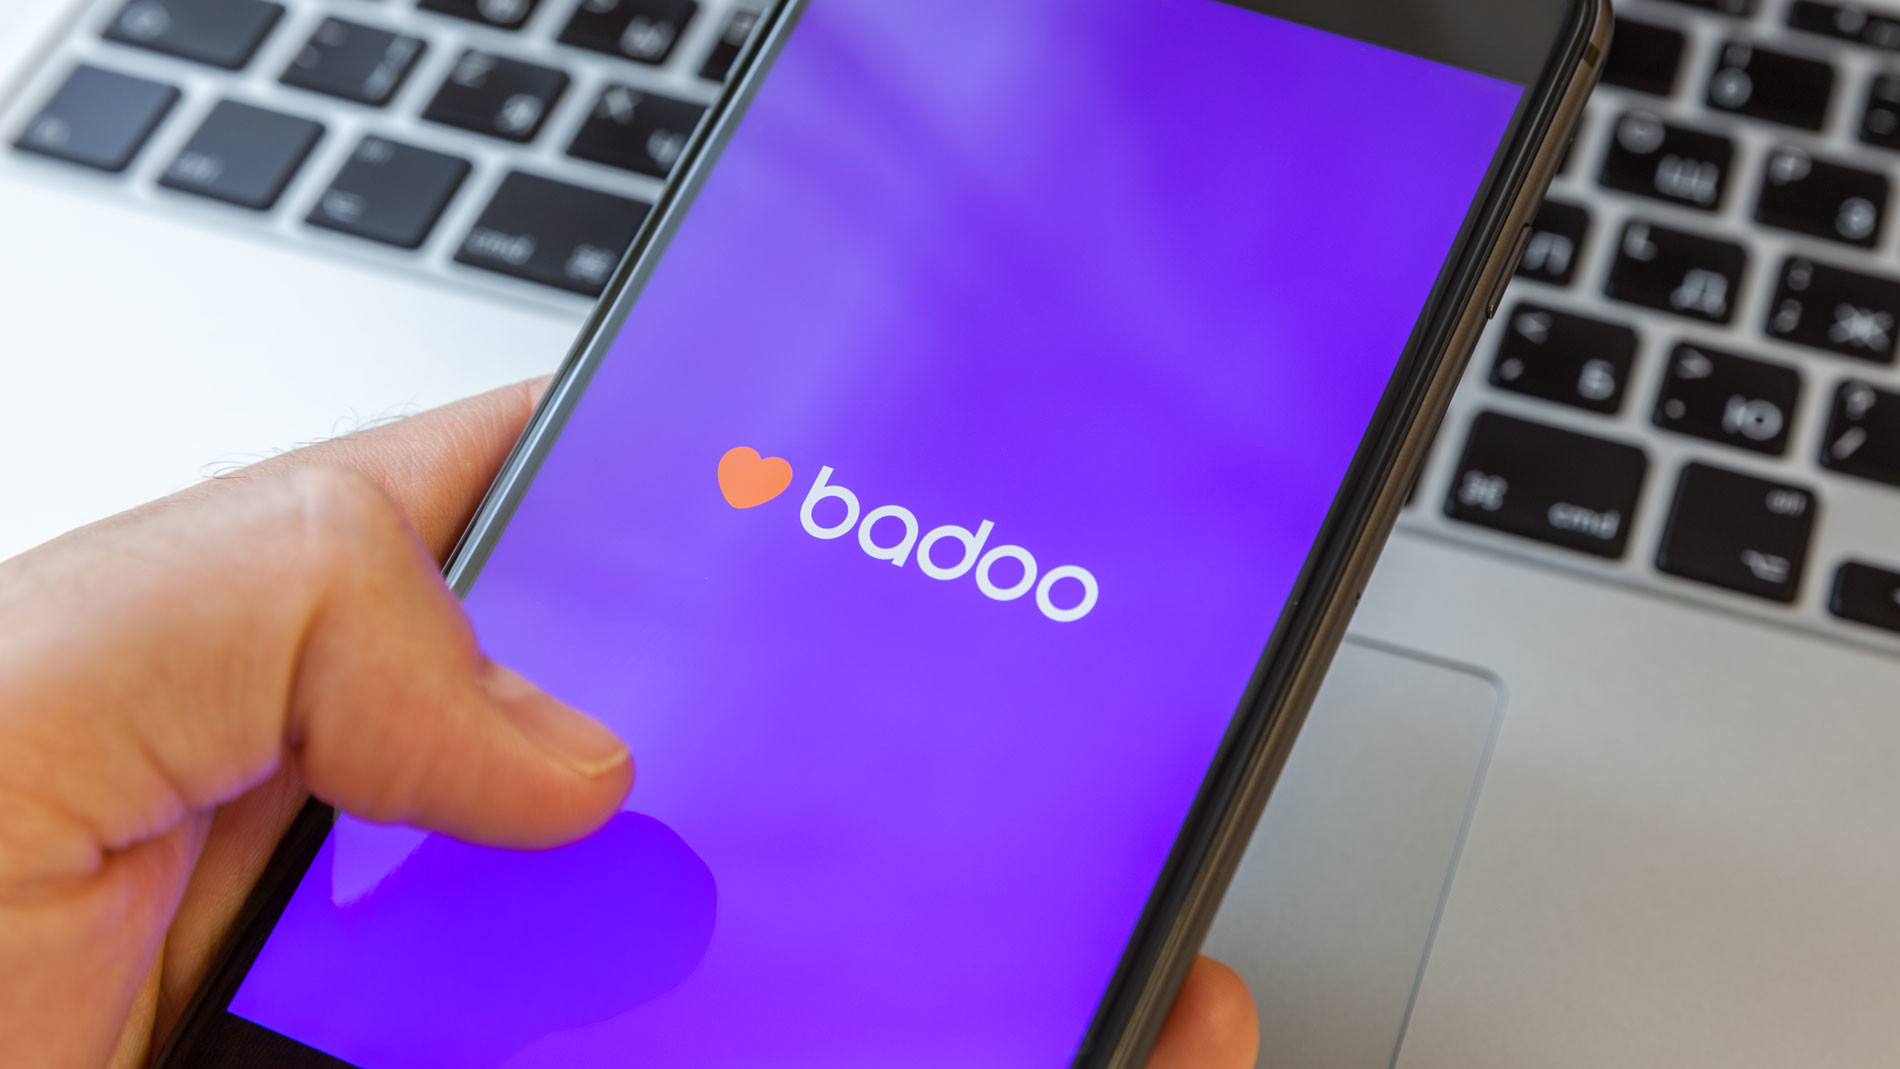 Сайт знакомств Badoo перестал работать в России и Белоруссии